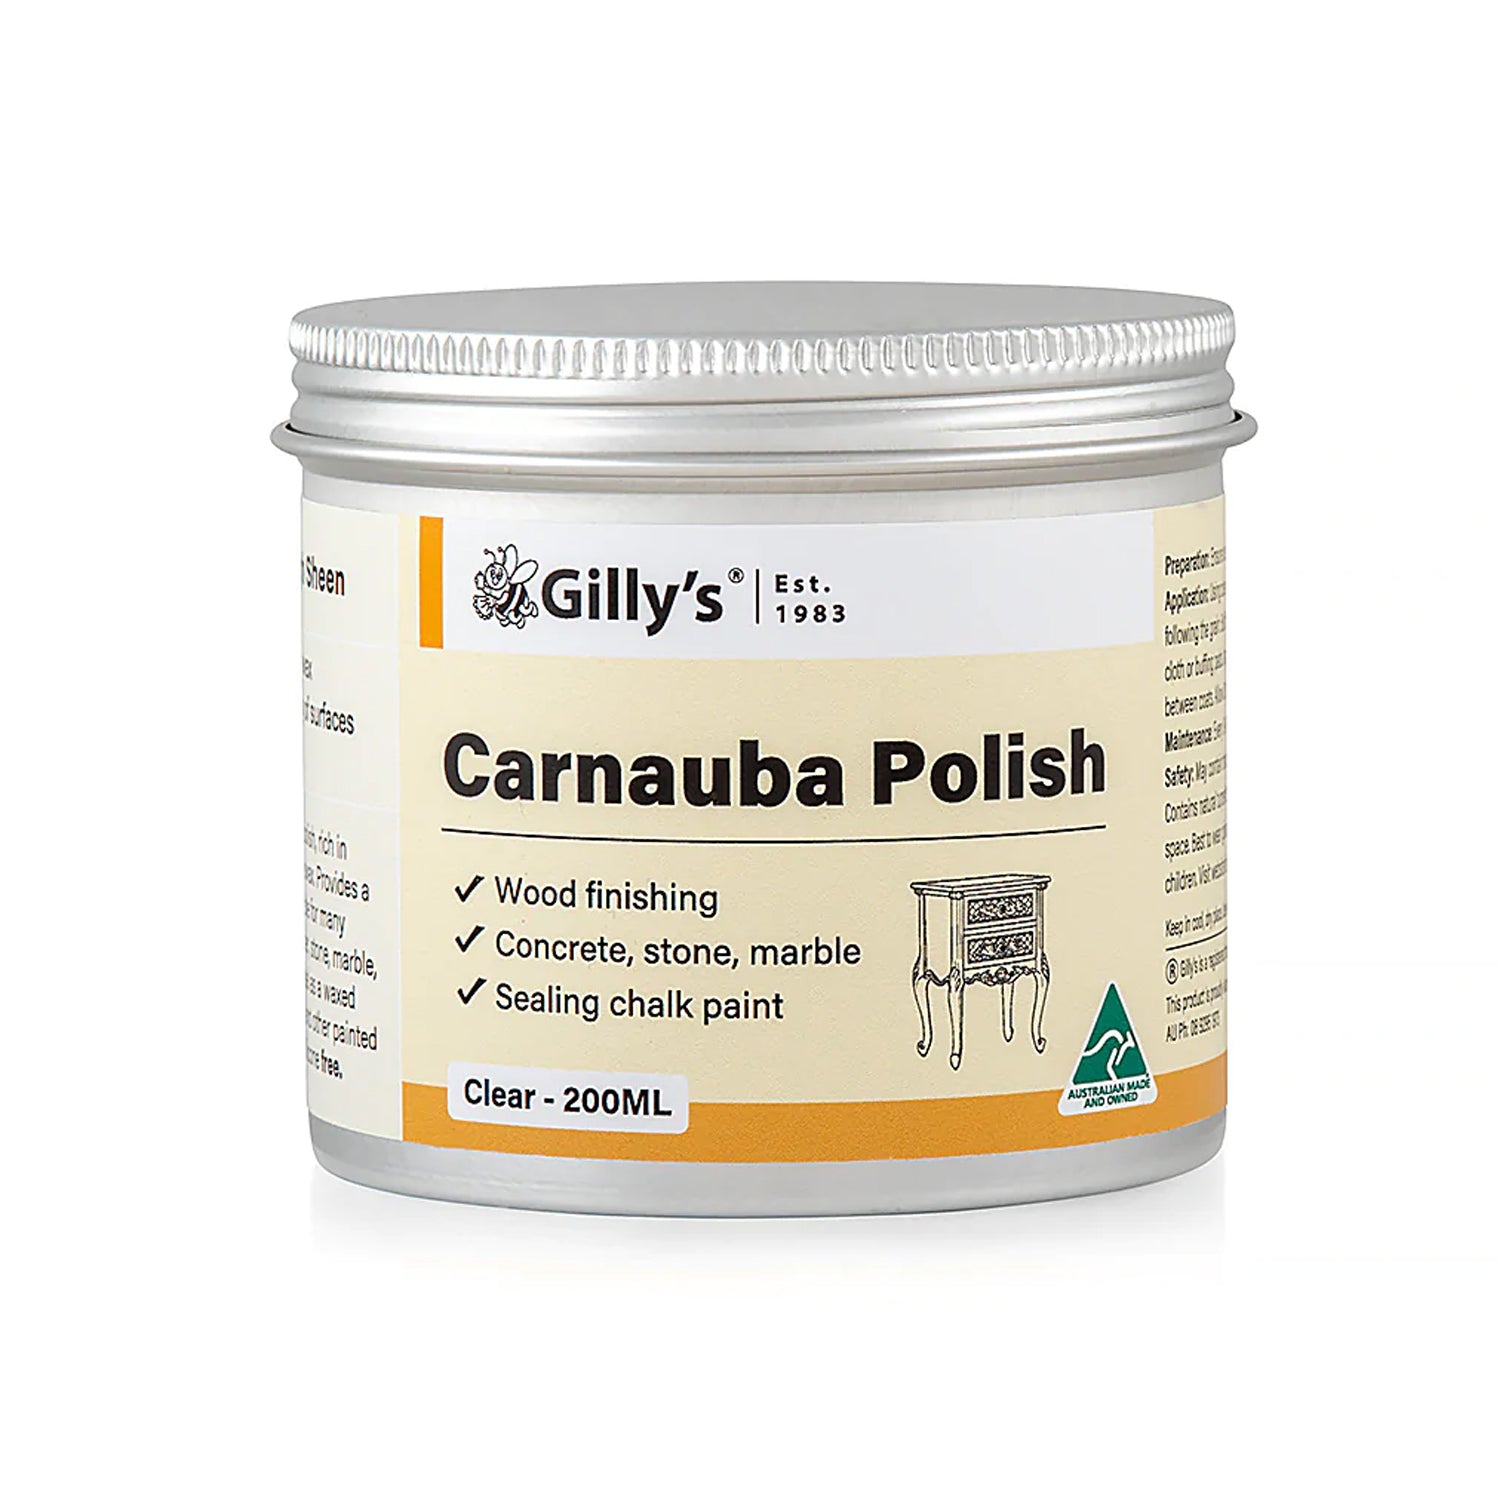 Carnauba Polish by Gilly's